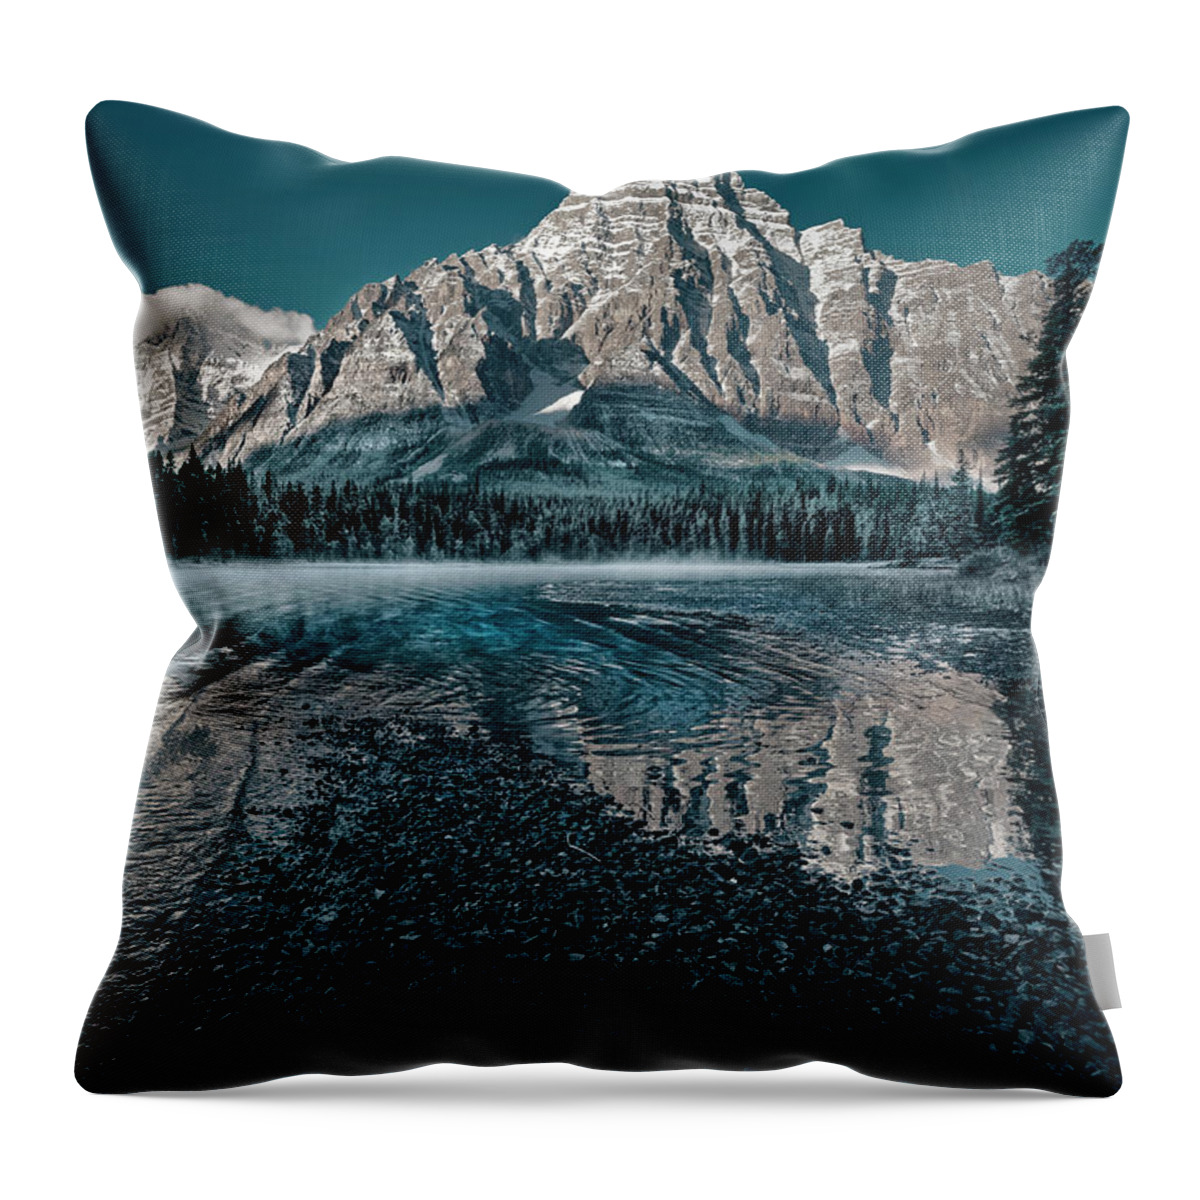 Banff Throw Pillow featuring the photograph Mount Chephren Reflected by Dan Jurak